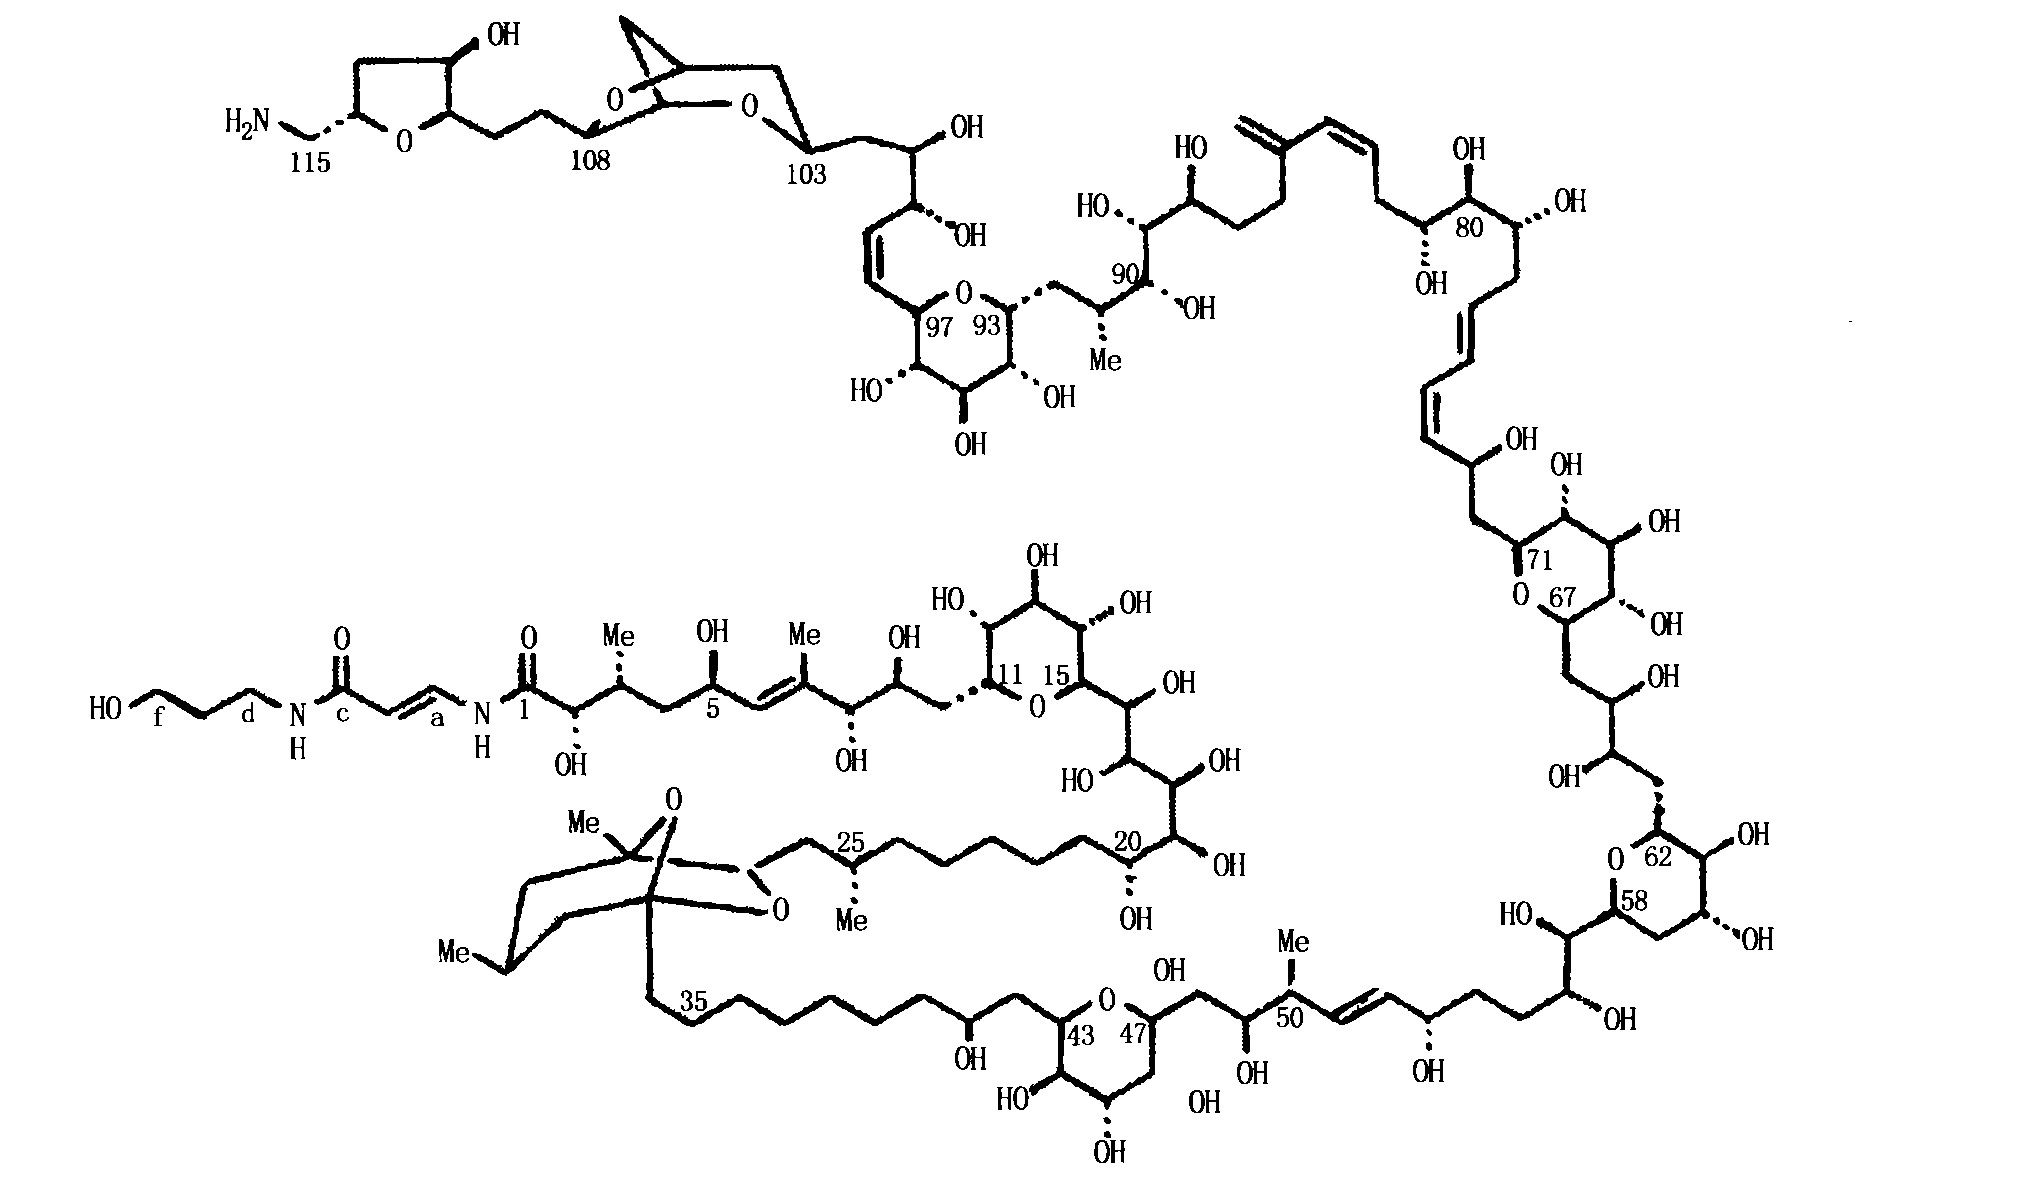 岩沙海葵毒素化学结构图片